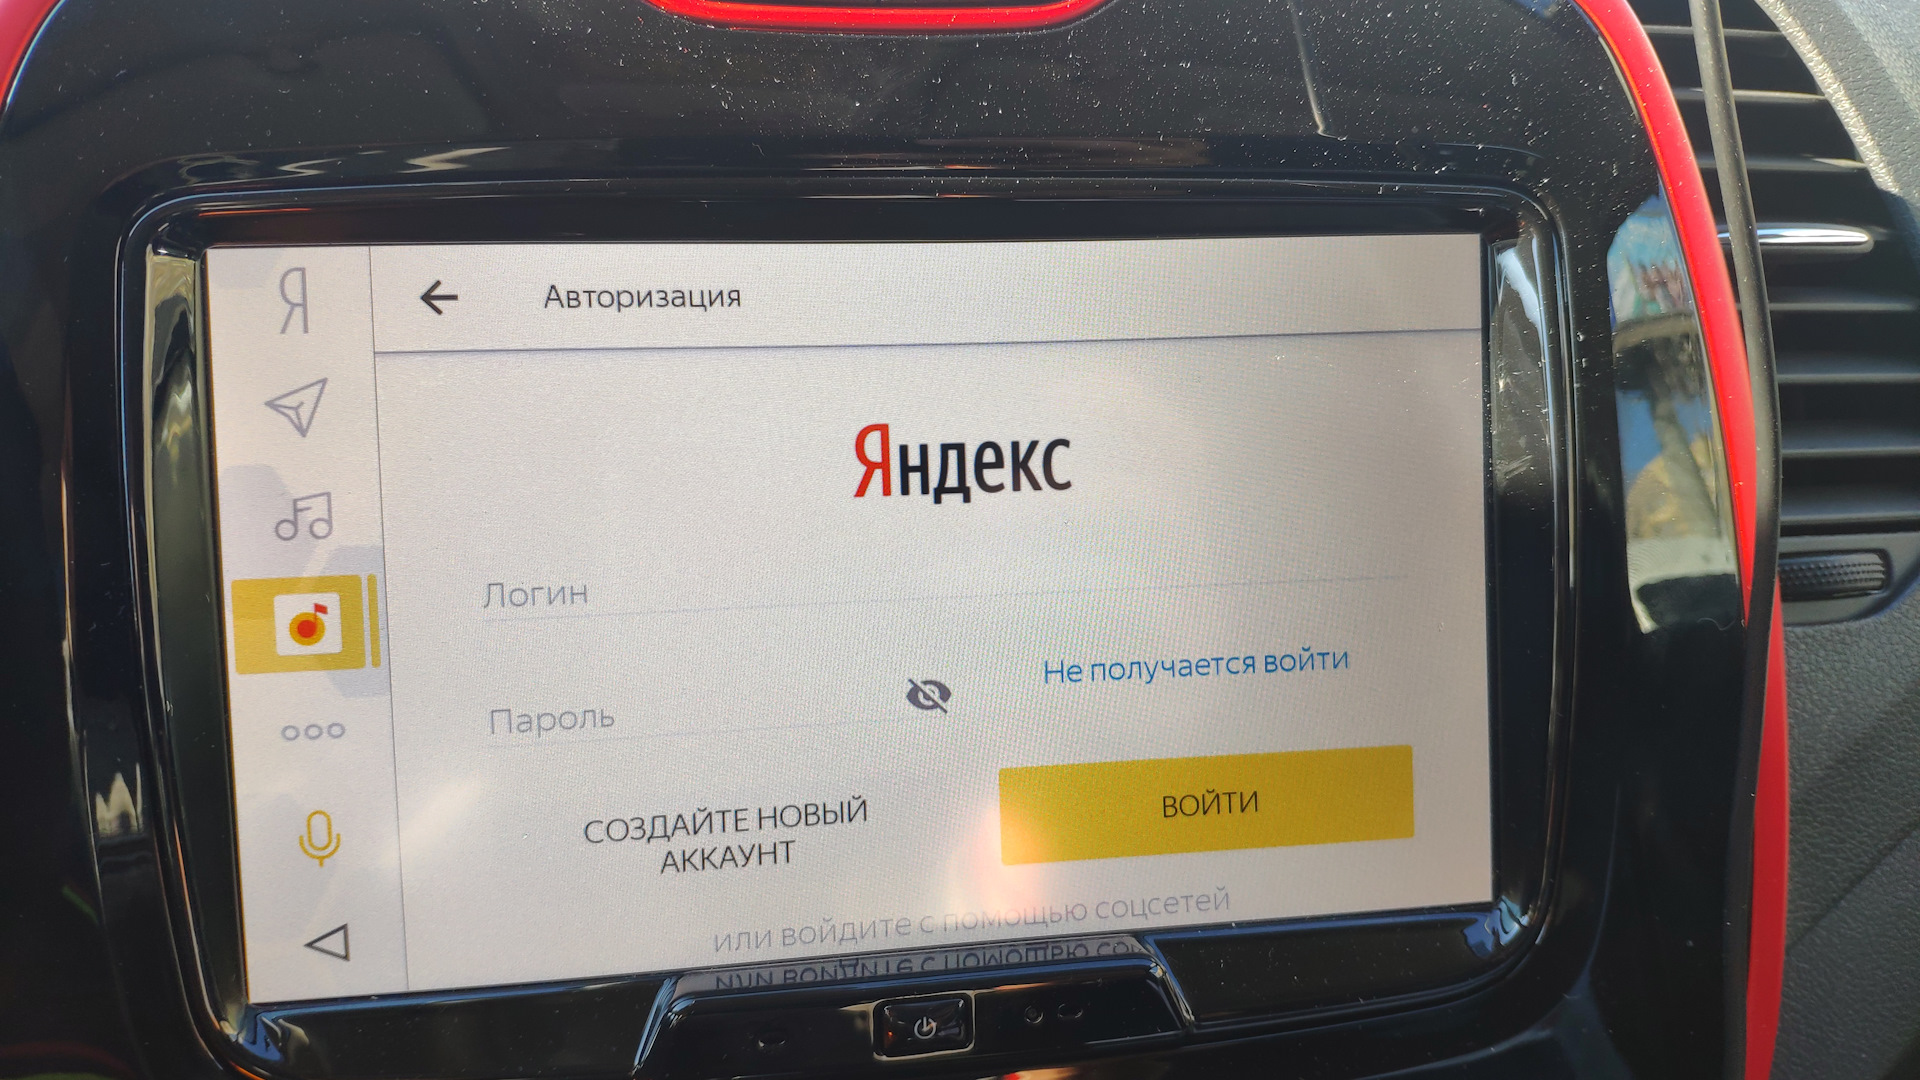 Авторизация авто в навигаторе. Авторизоваться в Яндексе.